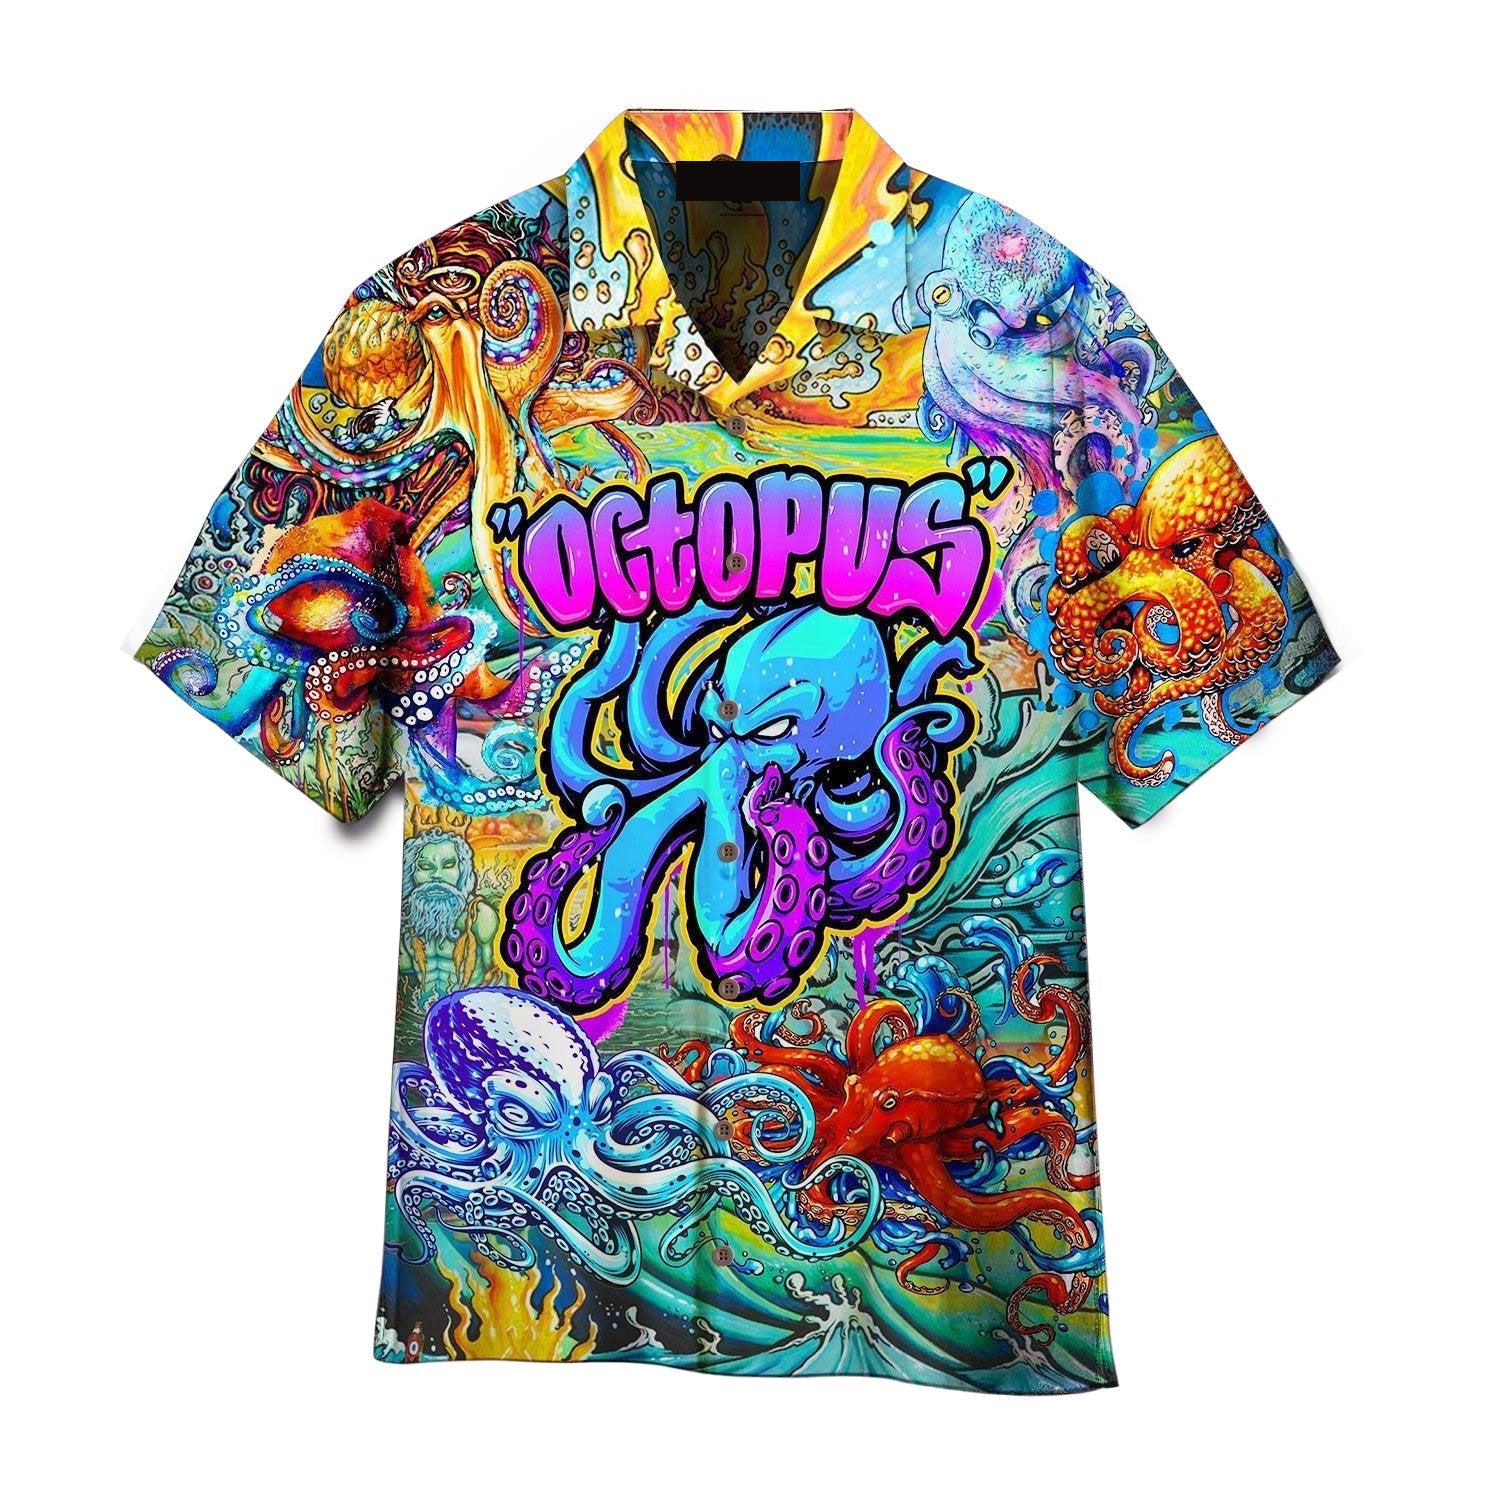 Octopus Colorful Hippie Aloha Hawaiian Shirts For Men, Women